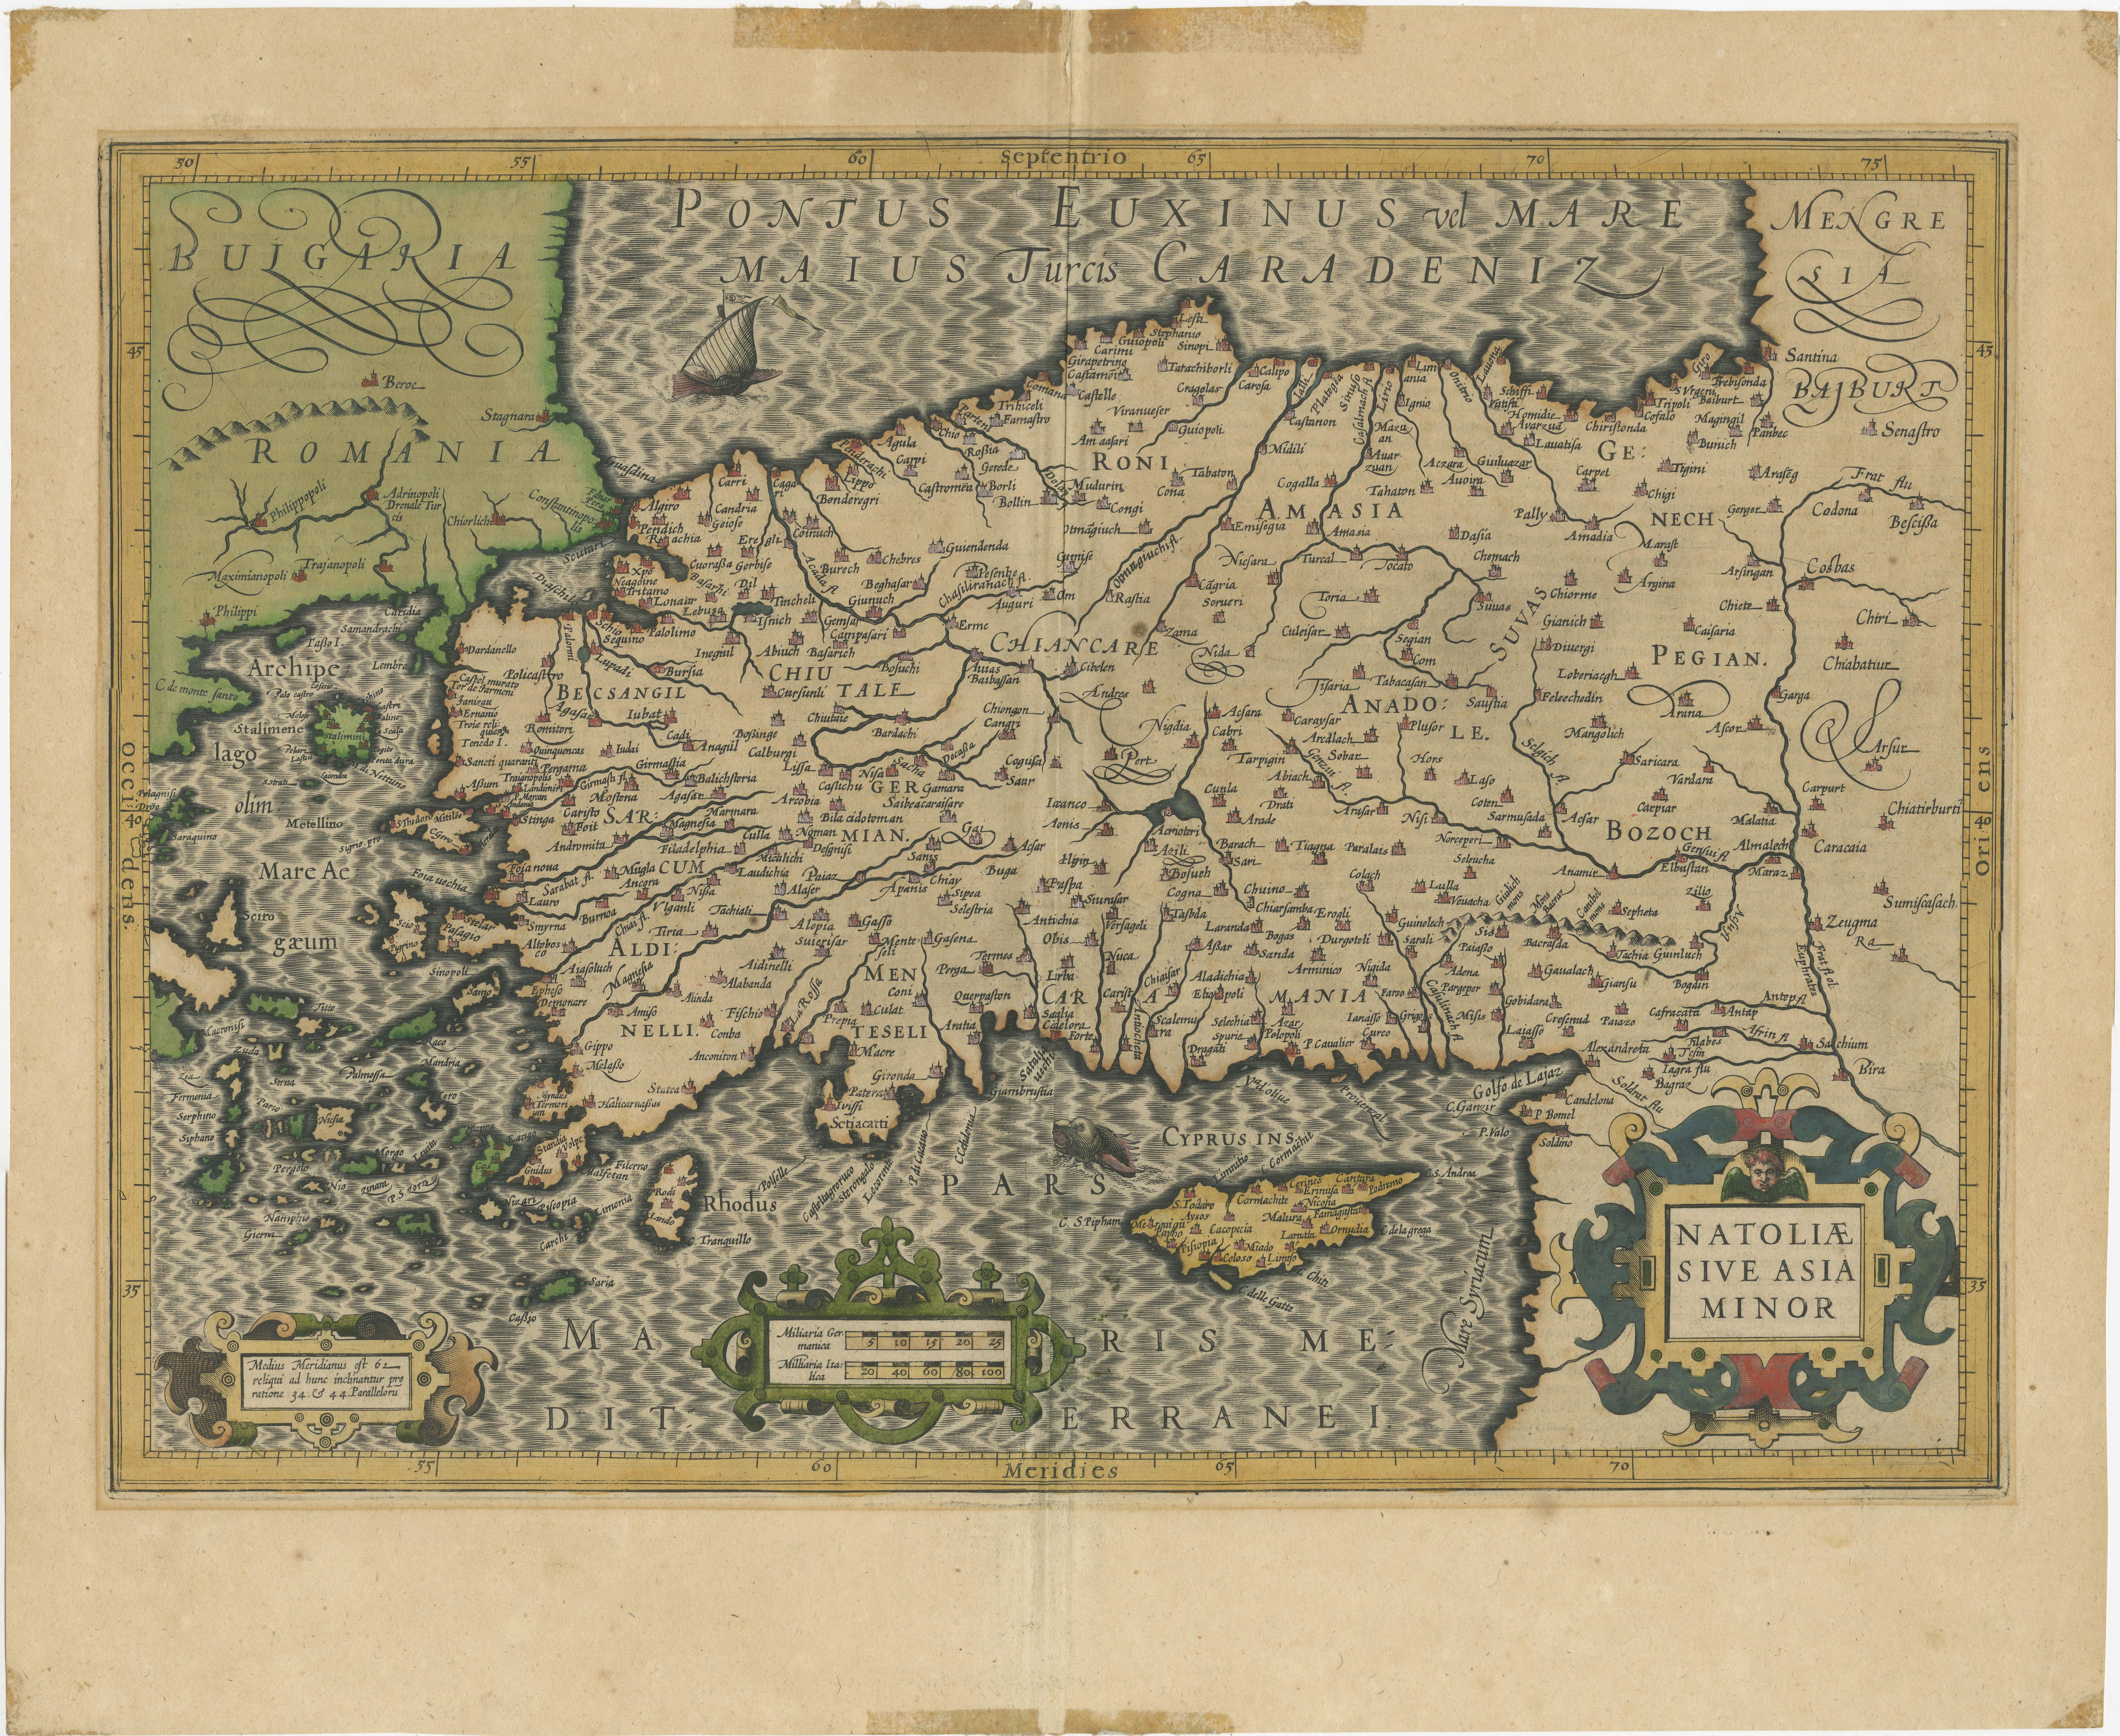 Antike Karte mit dem Titel 'Natoliae sive Asia Minor'. Originale alte Karte der Türkei, Kleinasiens und Zyperns. Enthält eine dekorative Kartusche, ein Segelschiff, ein Seeungeheuer und fein gepunktete Meere. Von G. Mercator. Veröffentlicht um 1620. 